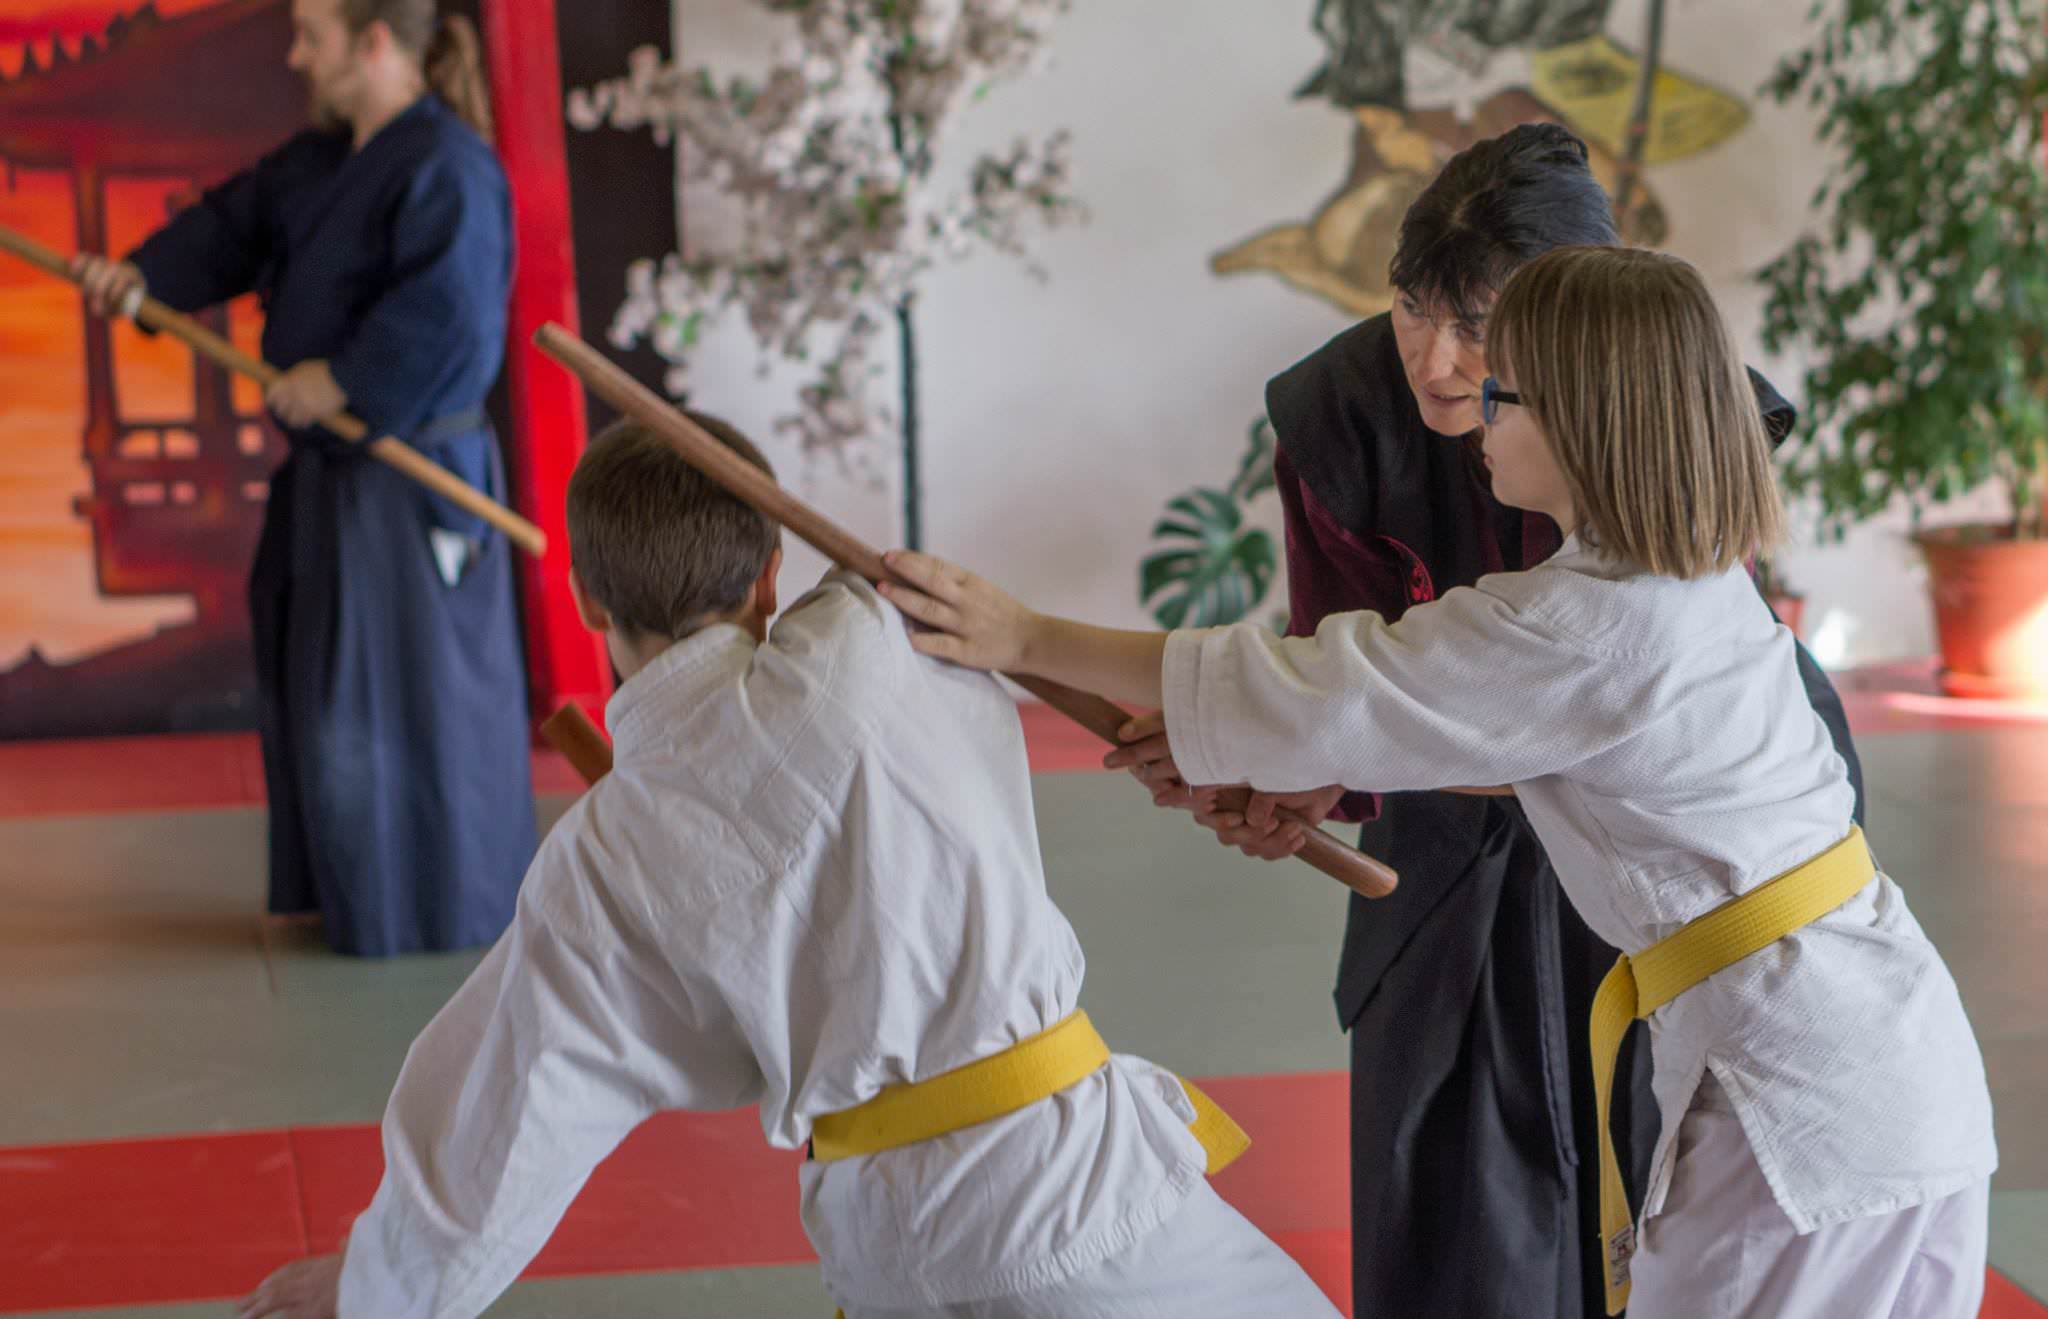 Days Of the Sword Seminar Gohshinkan Ryu Dojo traditionelle Kampfkunst, Schwertkunst und Selbstverteidigung Impressionen aus dem Training